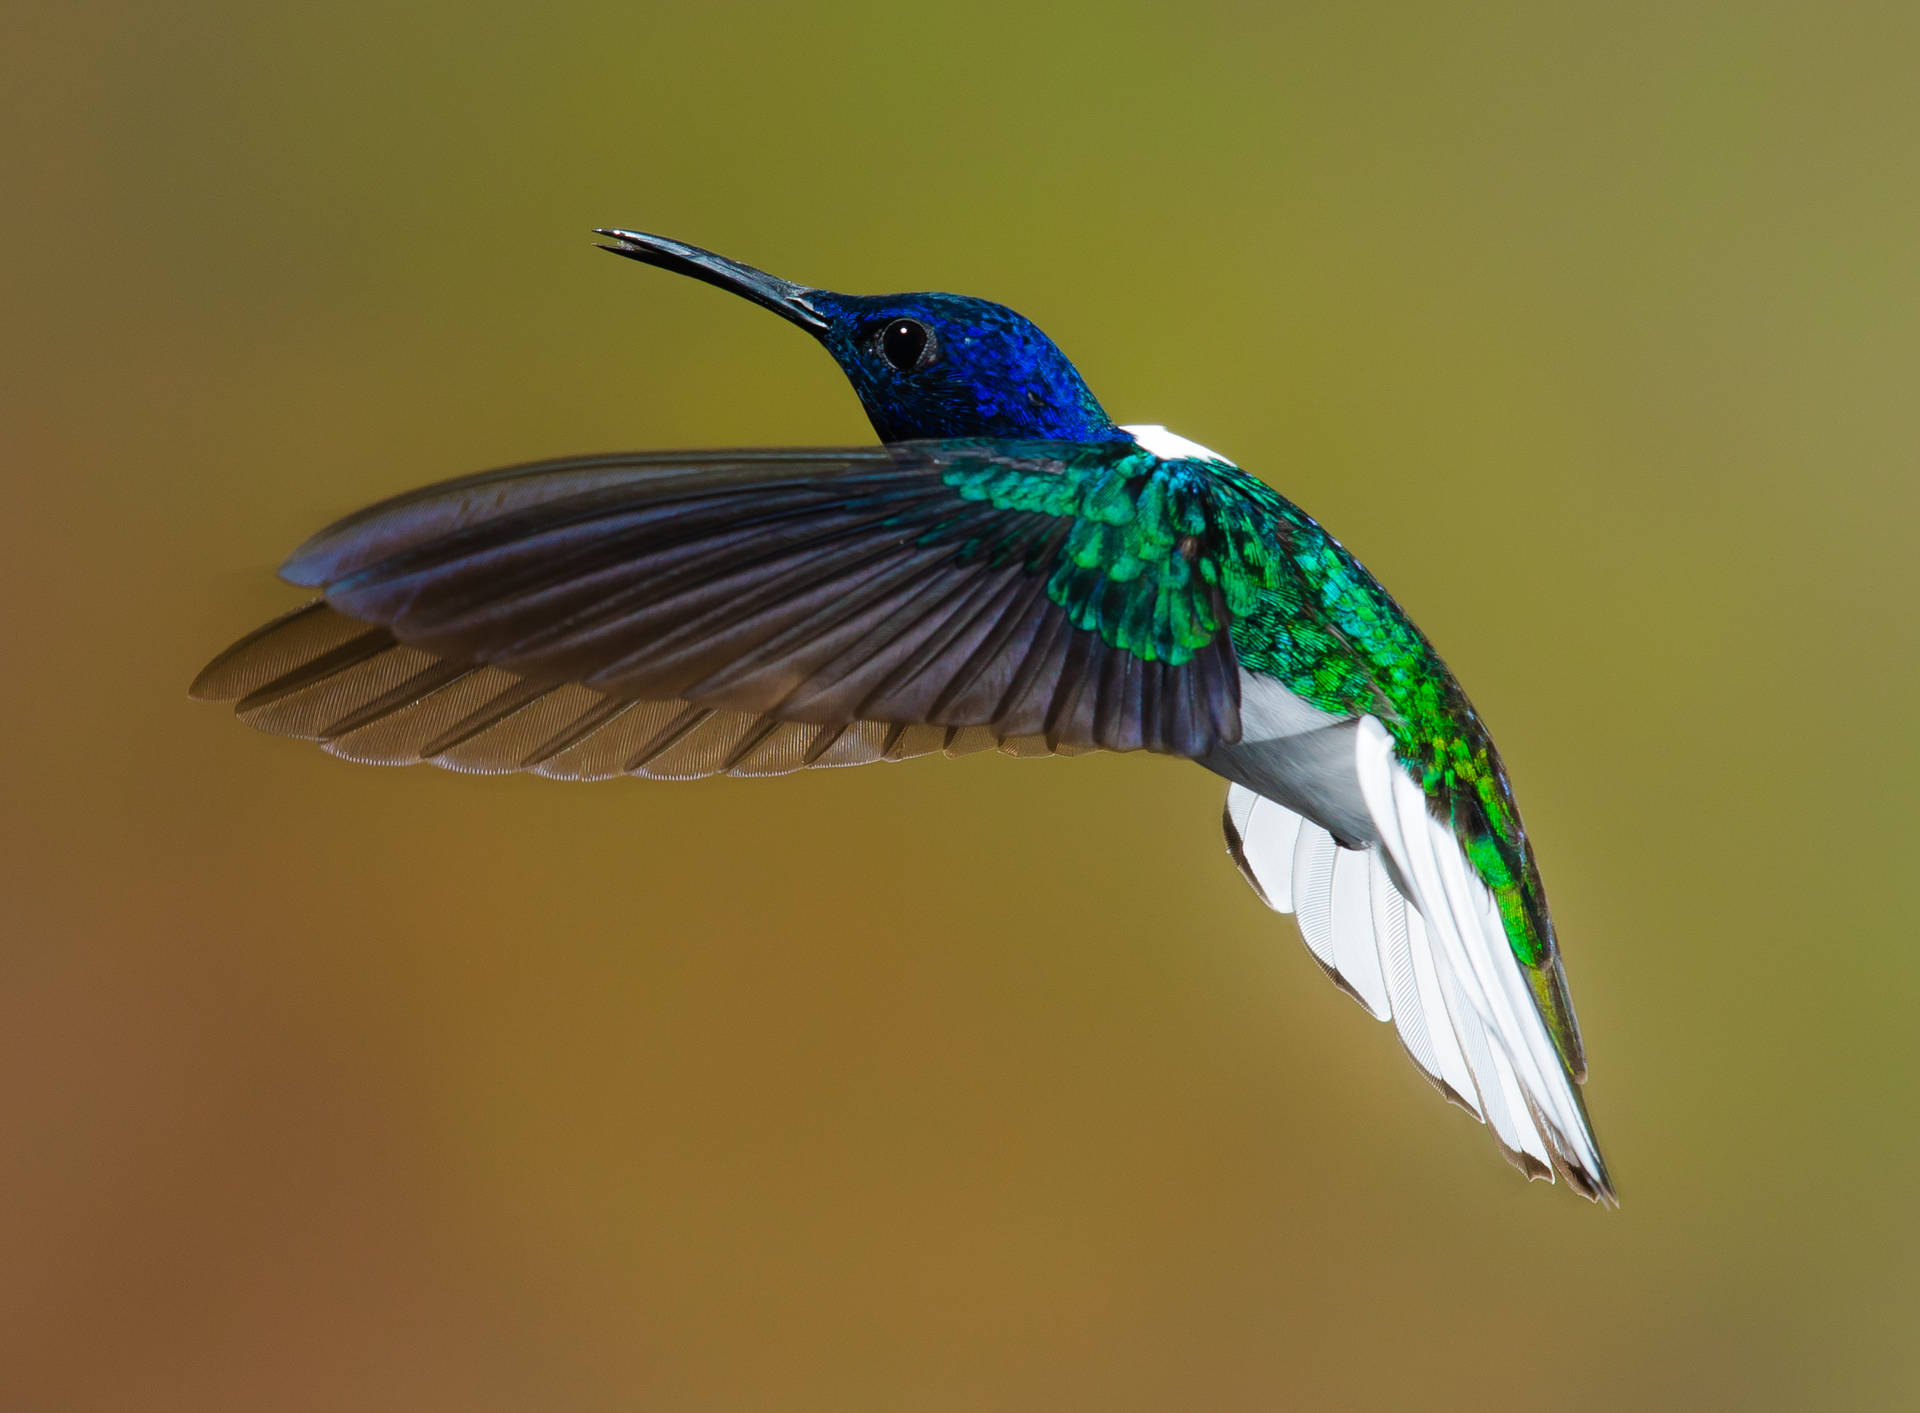 A beautiful hummingbird in mid-flight Wallpaper